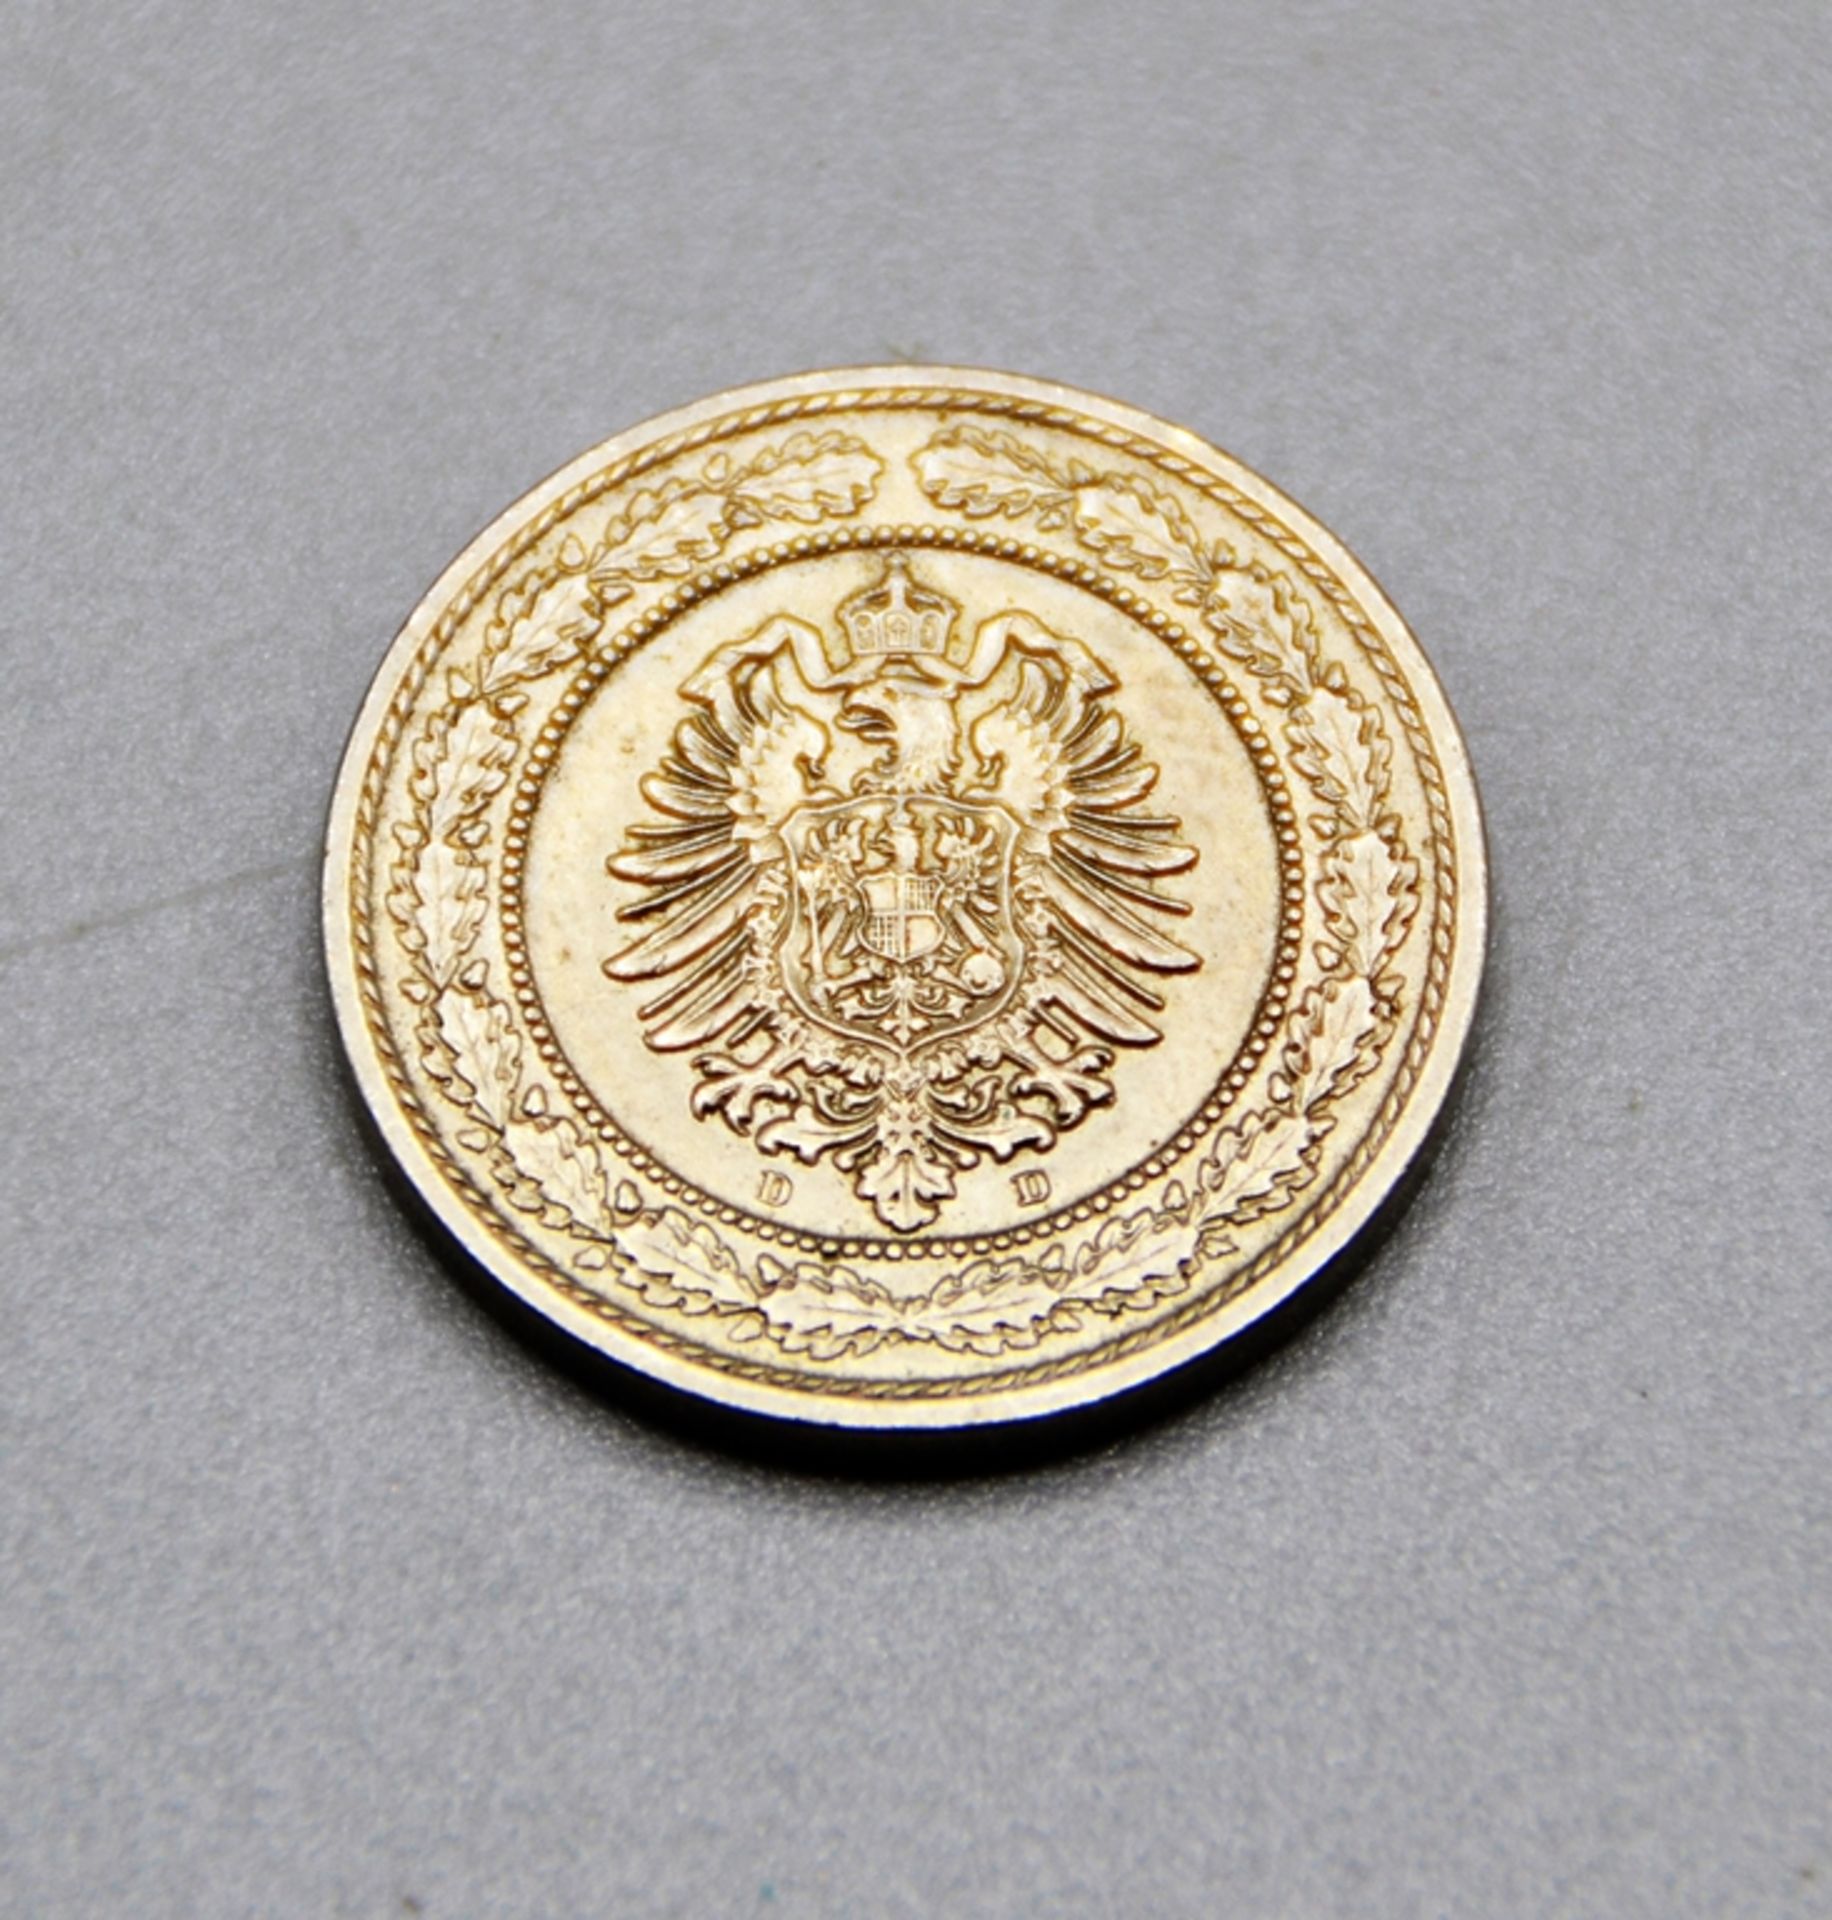 20 Pfennig 1888 D Deutsches Kaiserreich selten, sehr gute Erhaltung - Bild 2 aus 2